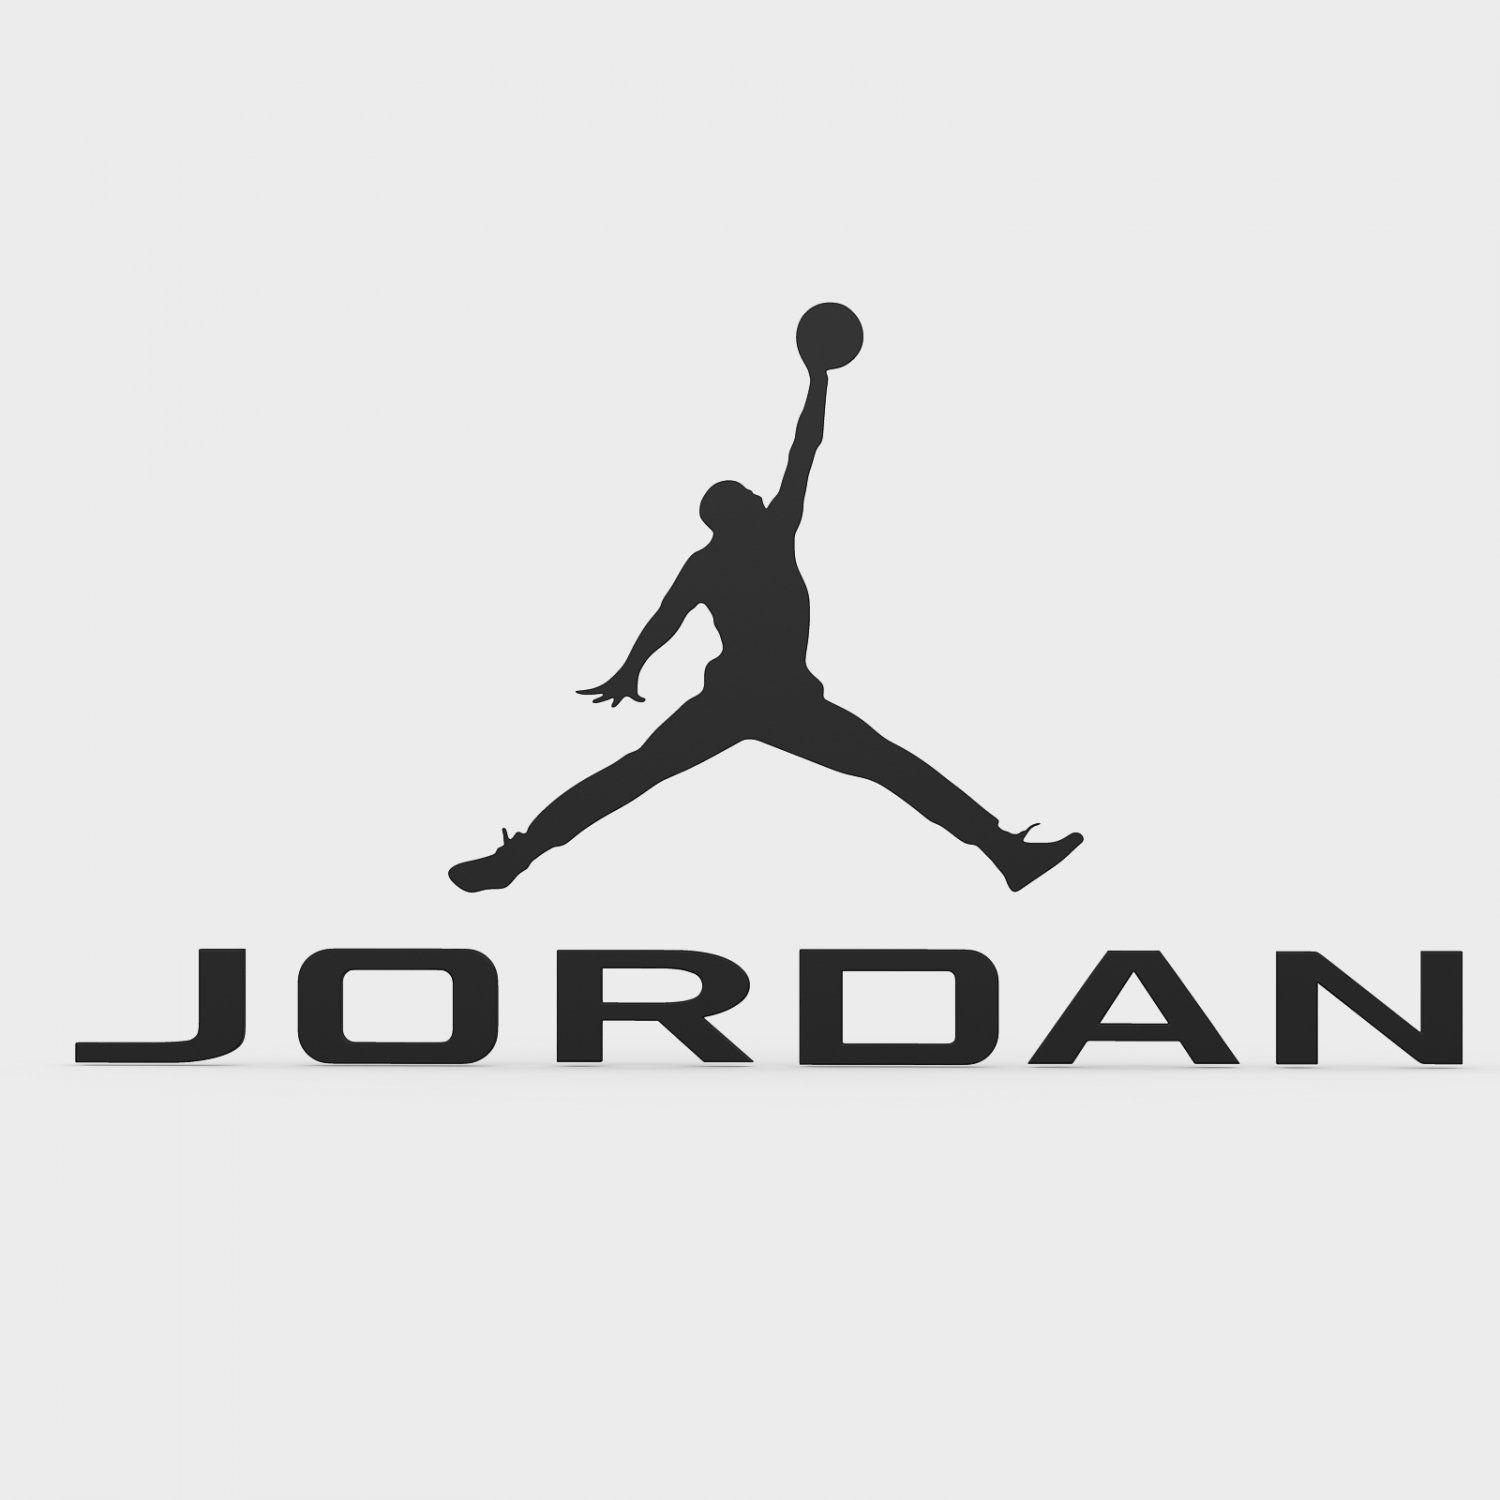 Jorden Logo - Jordan logo 3D Model in Other 3DExport